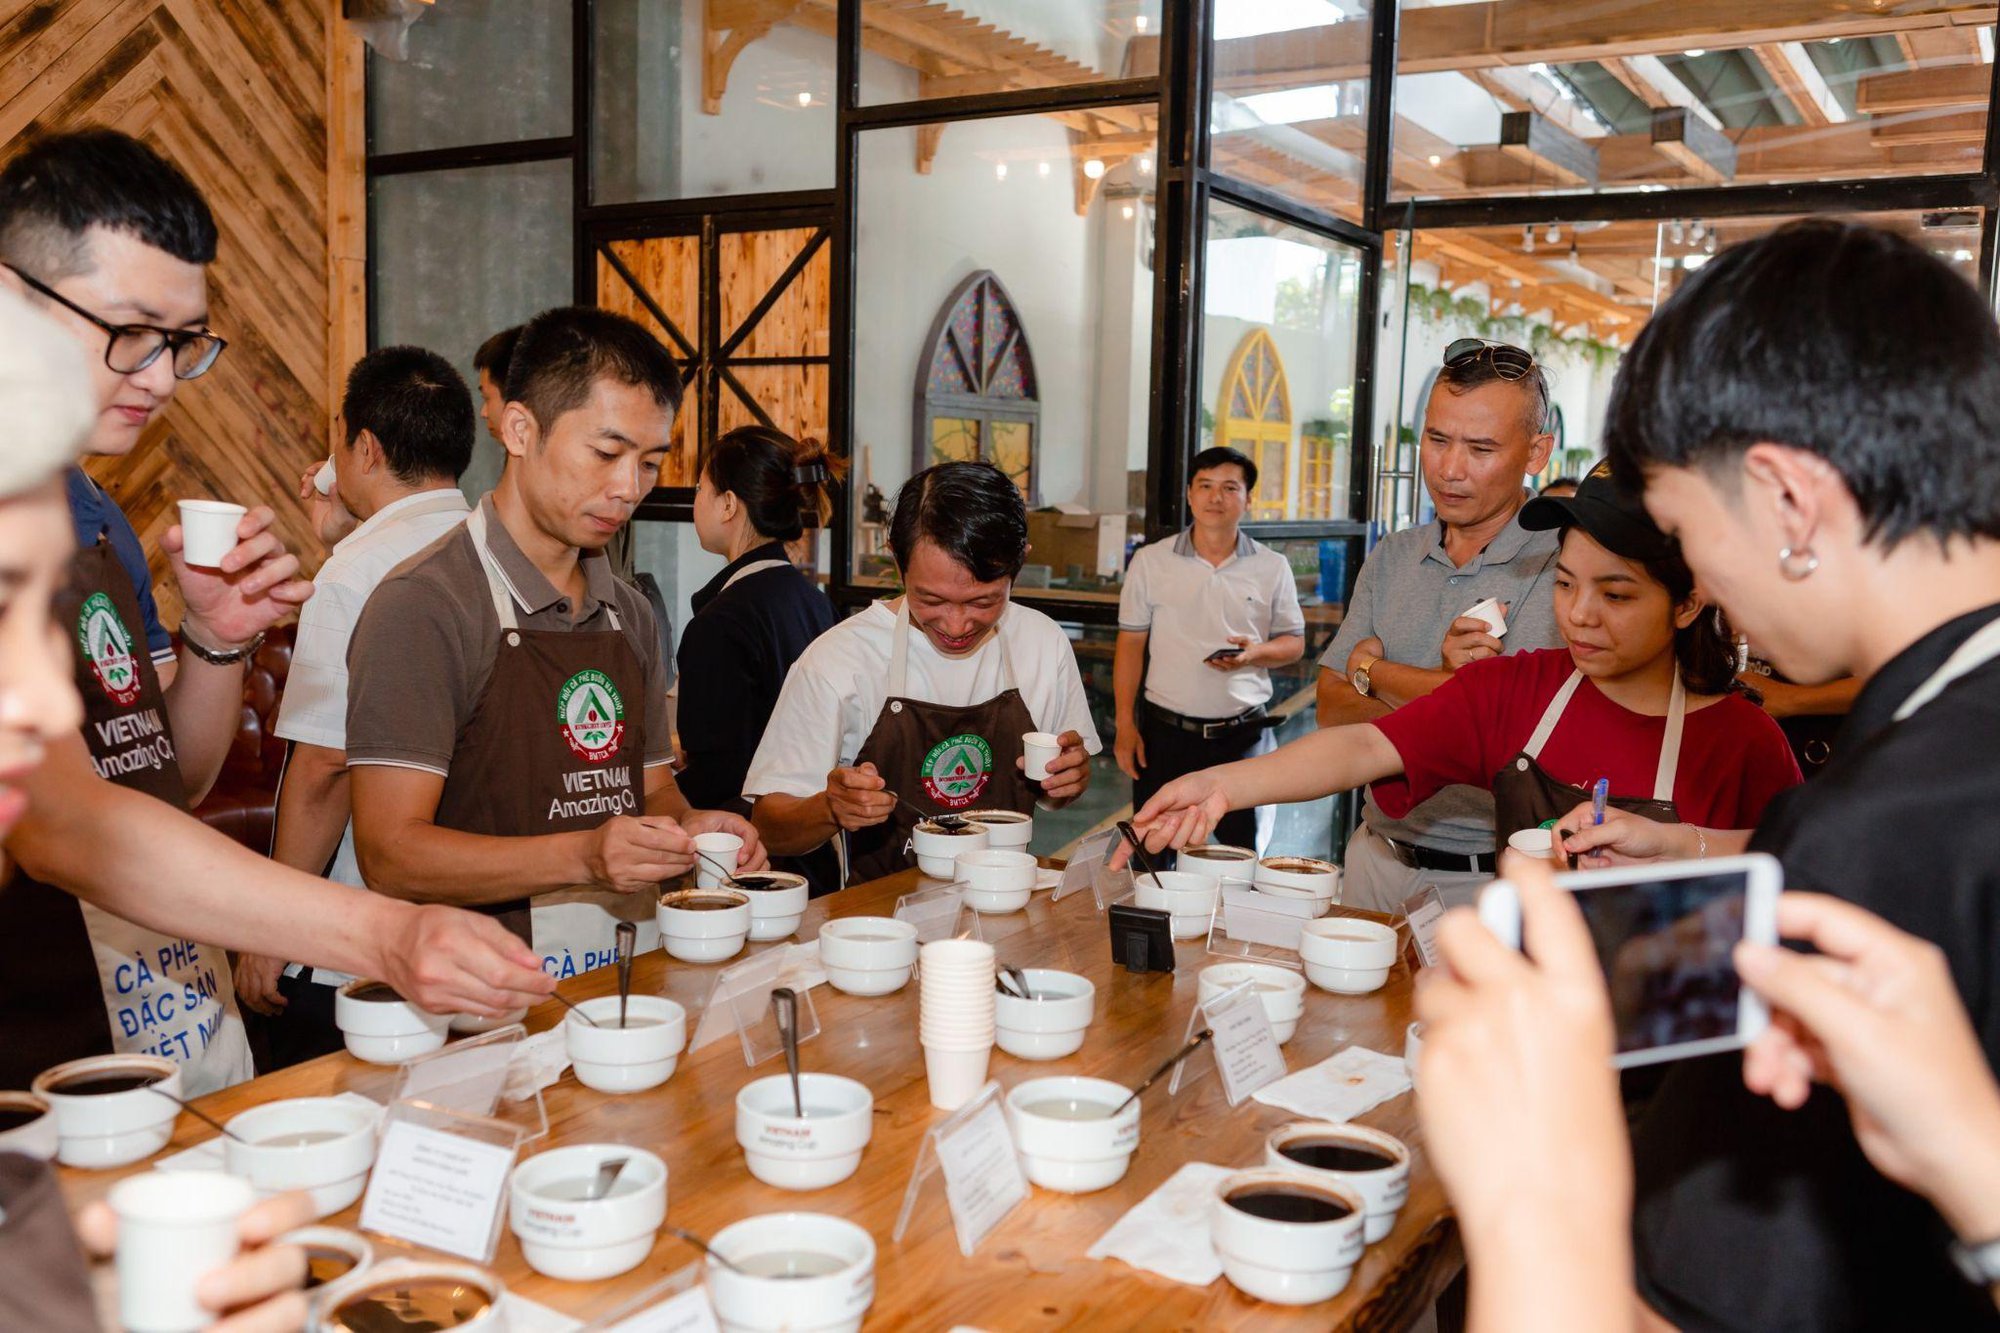 Mang cà phê đặc sản Việt Nam đến với thành phố biển Nha Trang